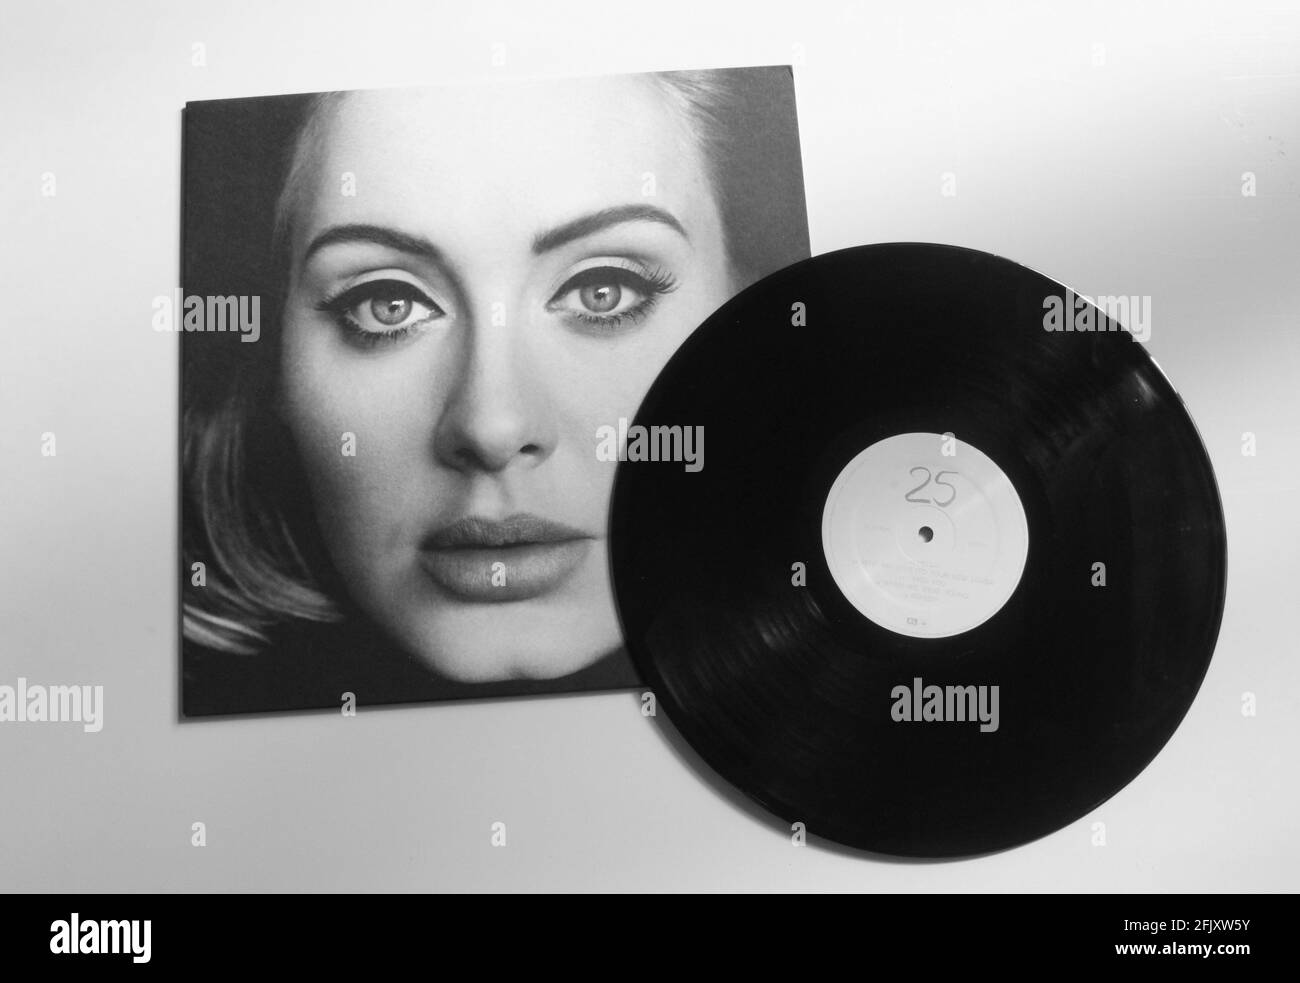 Album de musique Adele sur disque vinyle LP. Cet album s'appelle 25. Banque D'Images